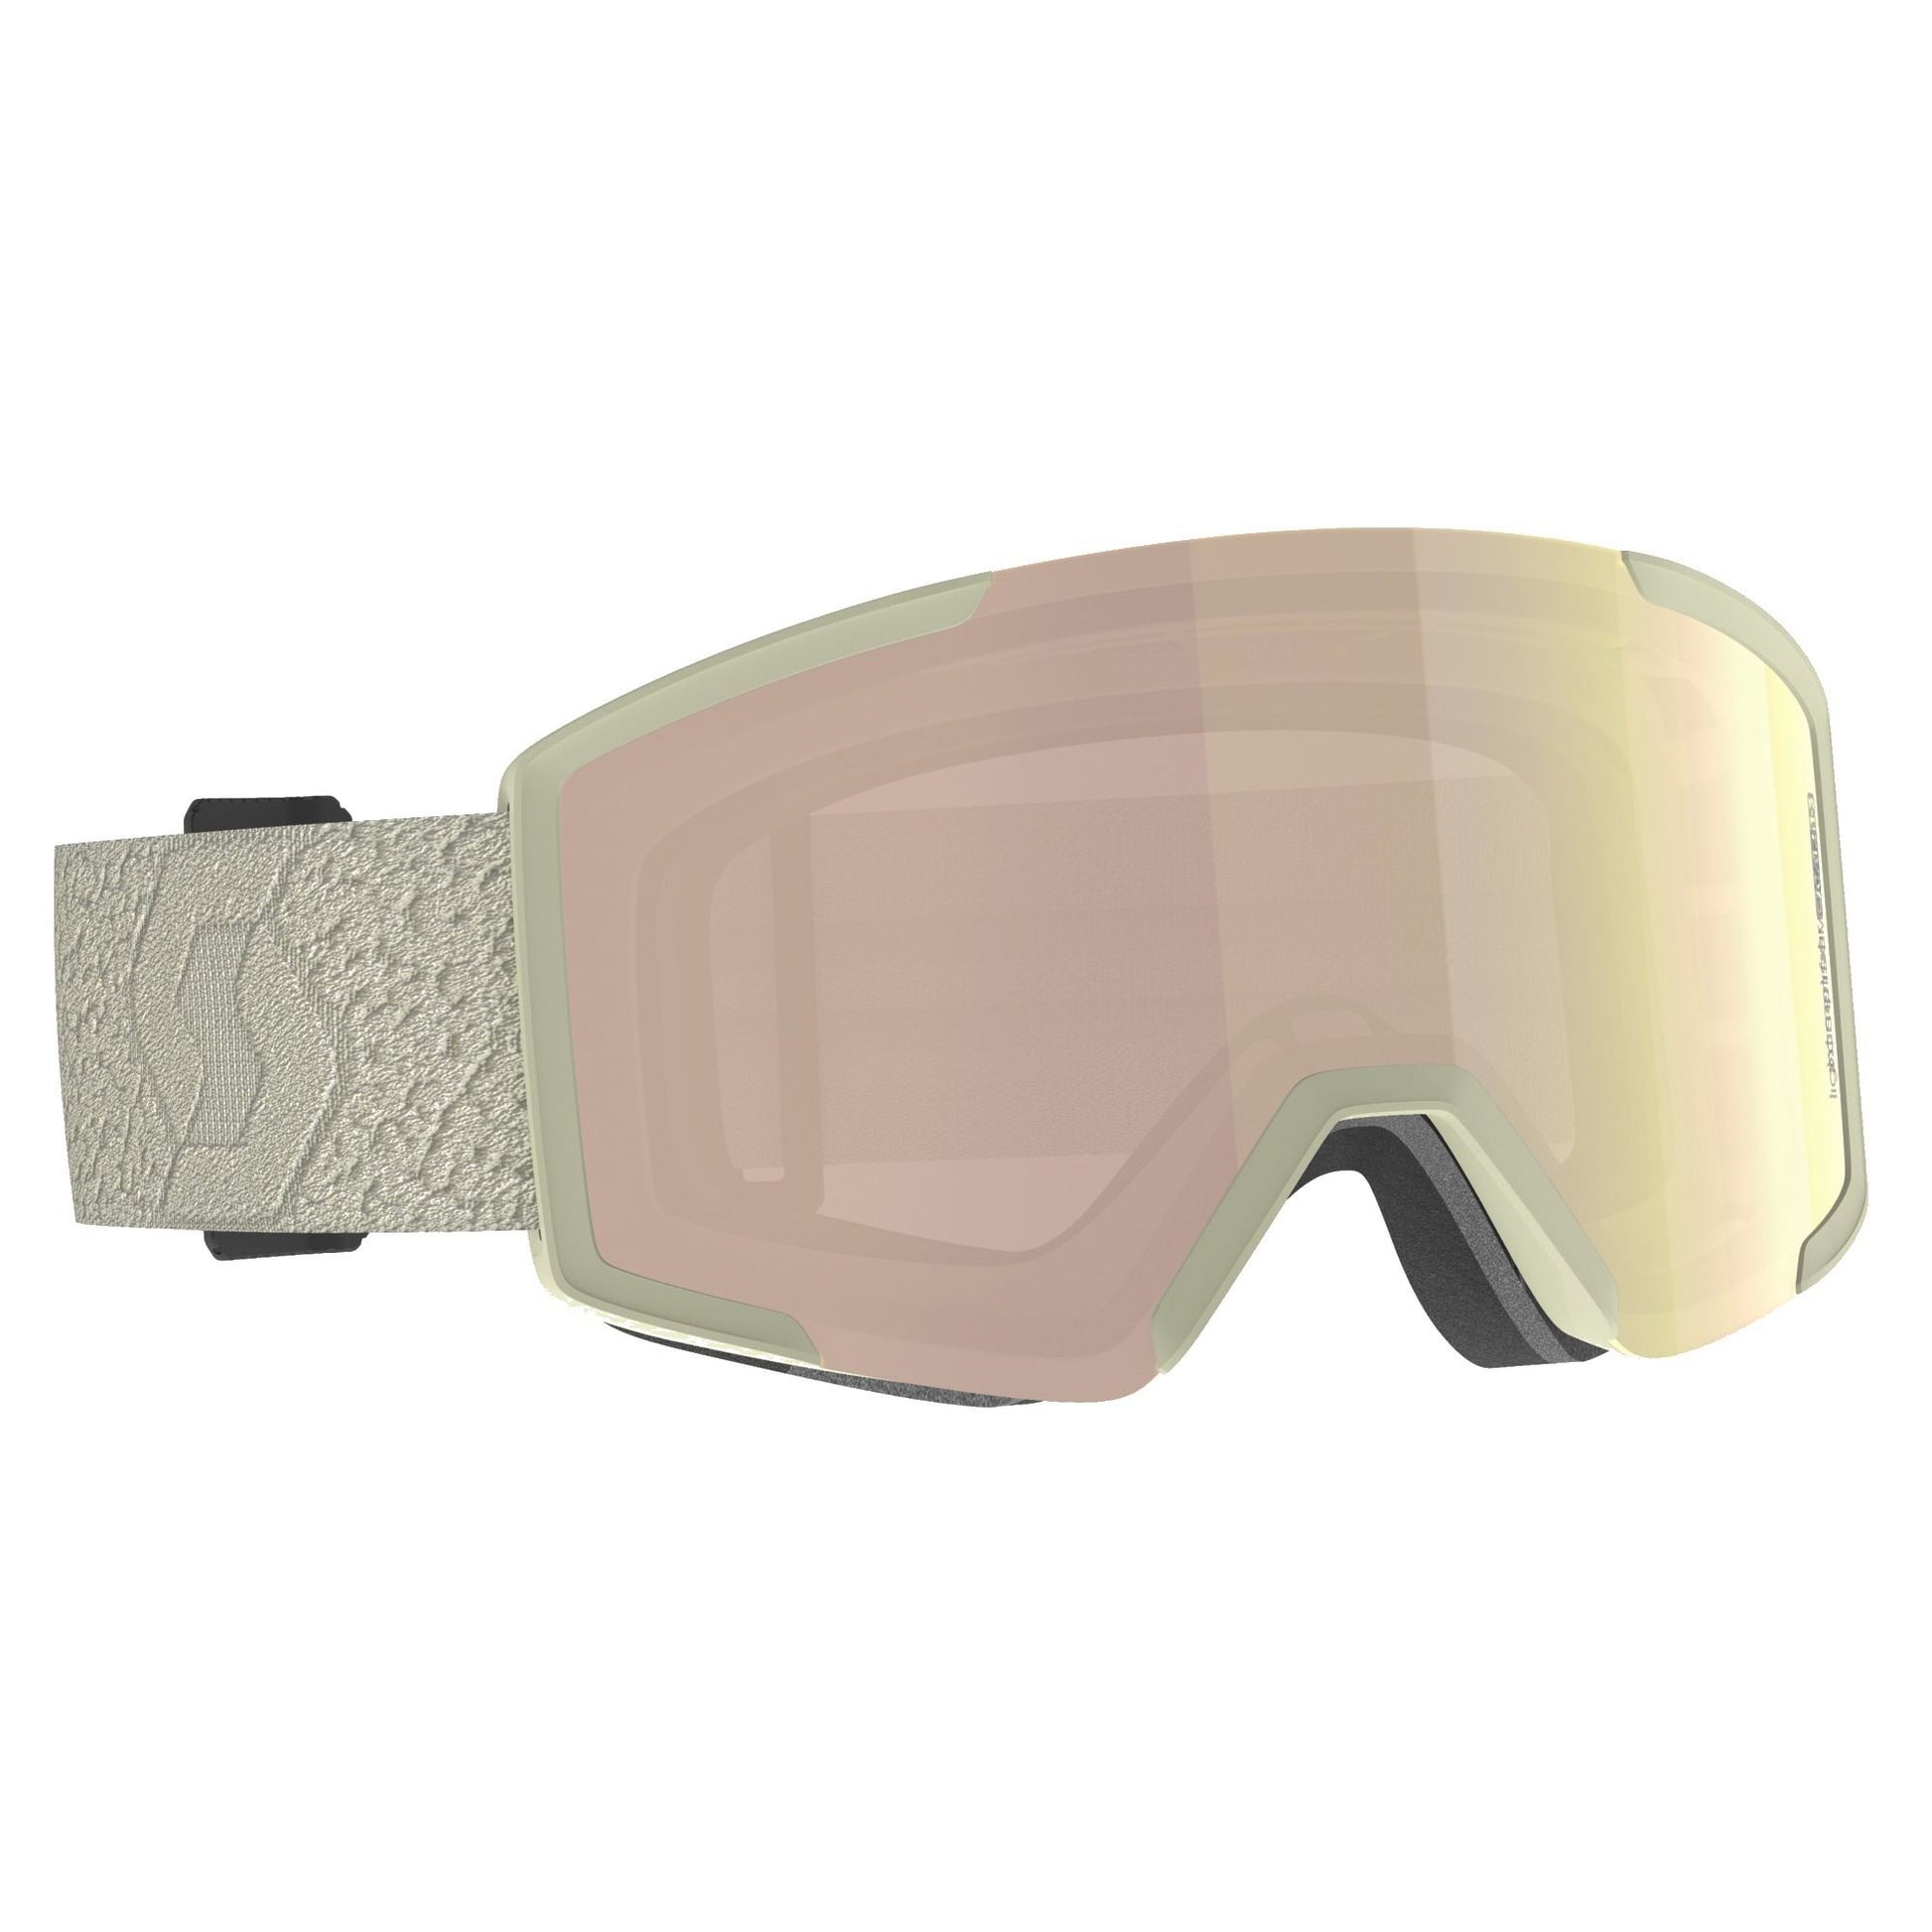 Scott Shield Snow Goggle + Extra Lens Light Beige / Enhancer Rose Chrome Snow Goggles